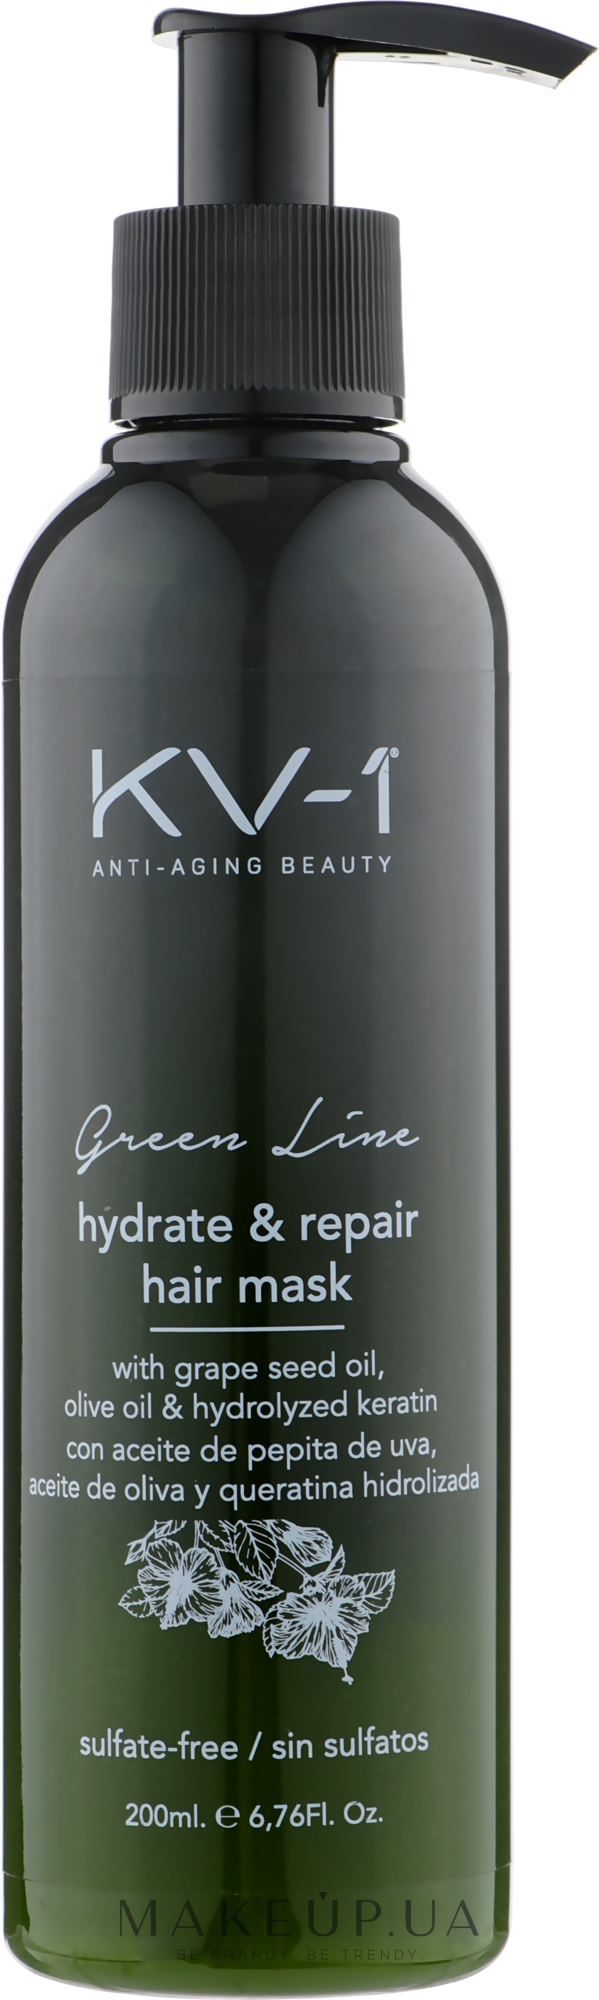 Маска-кондиціонер для зволоження й живлення волосся - KV-1 Green Line Hydrate & Repair Hair Mask — фото 200ml